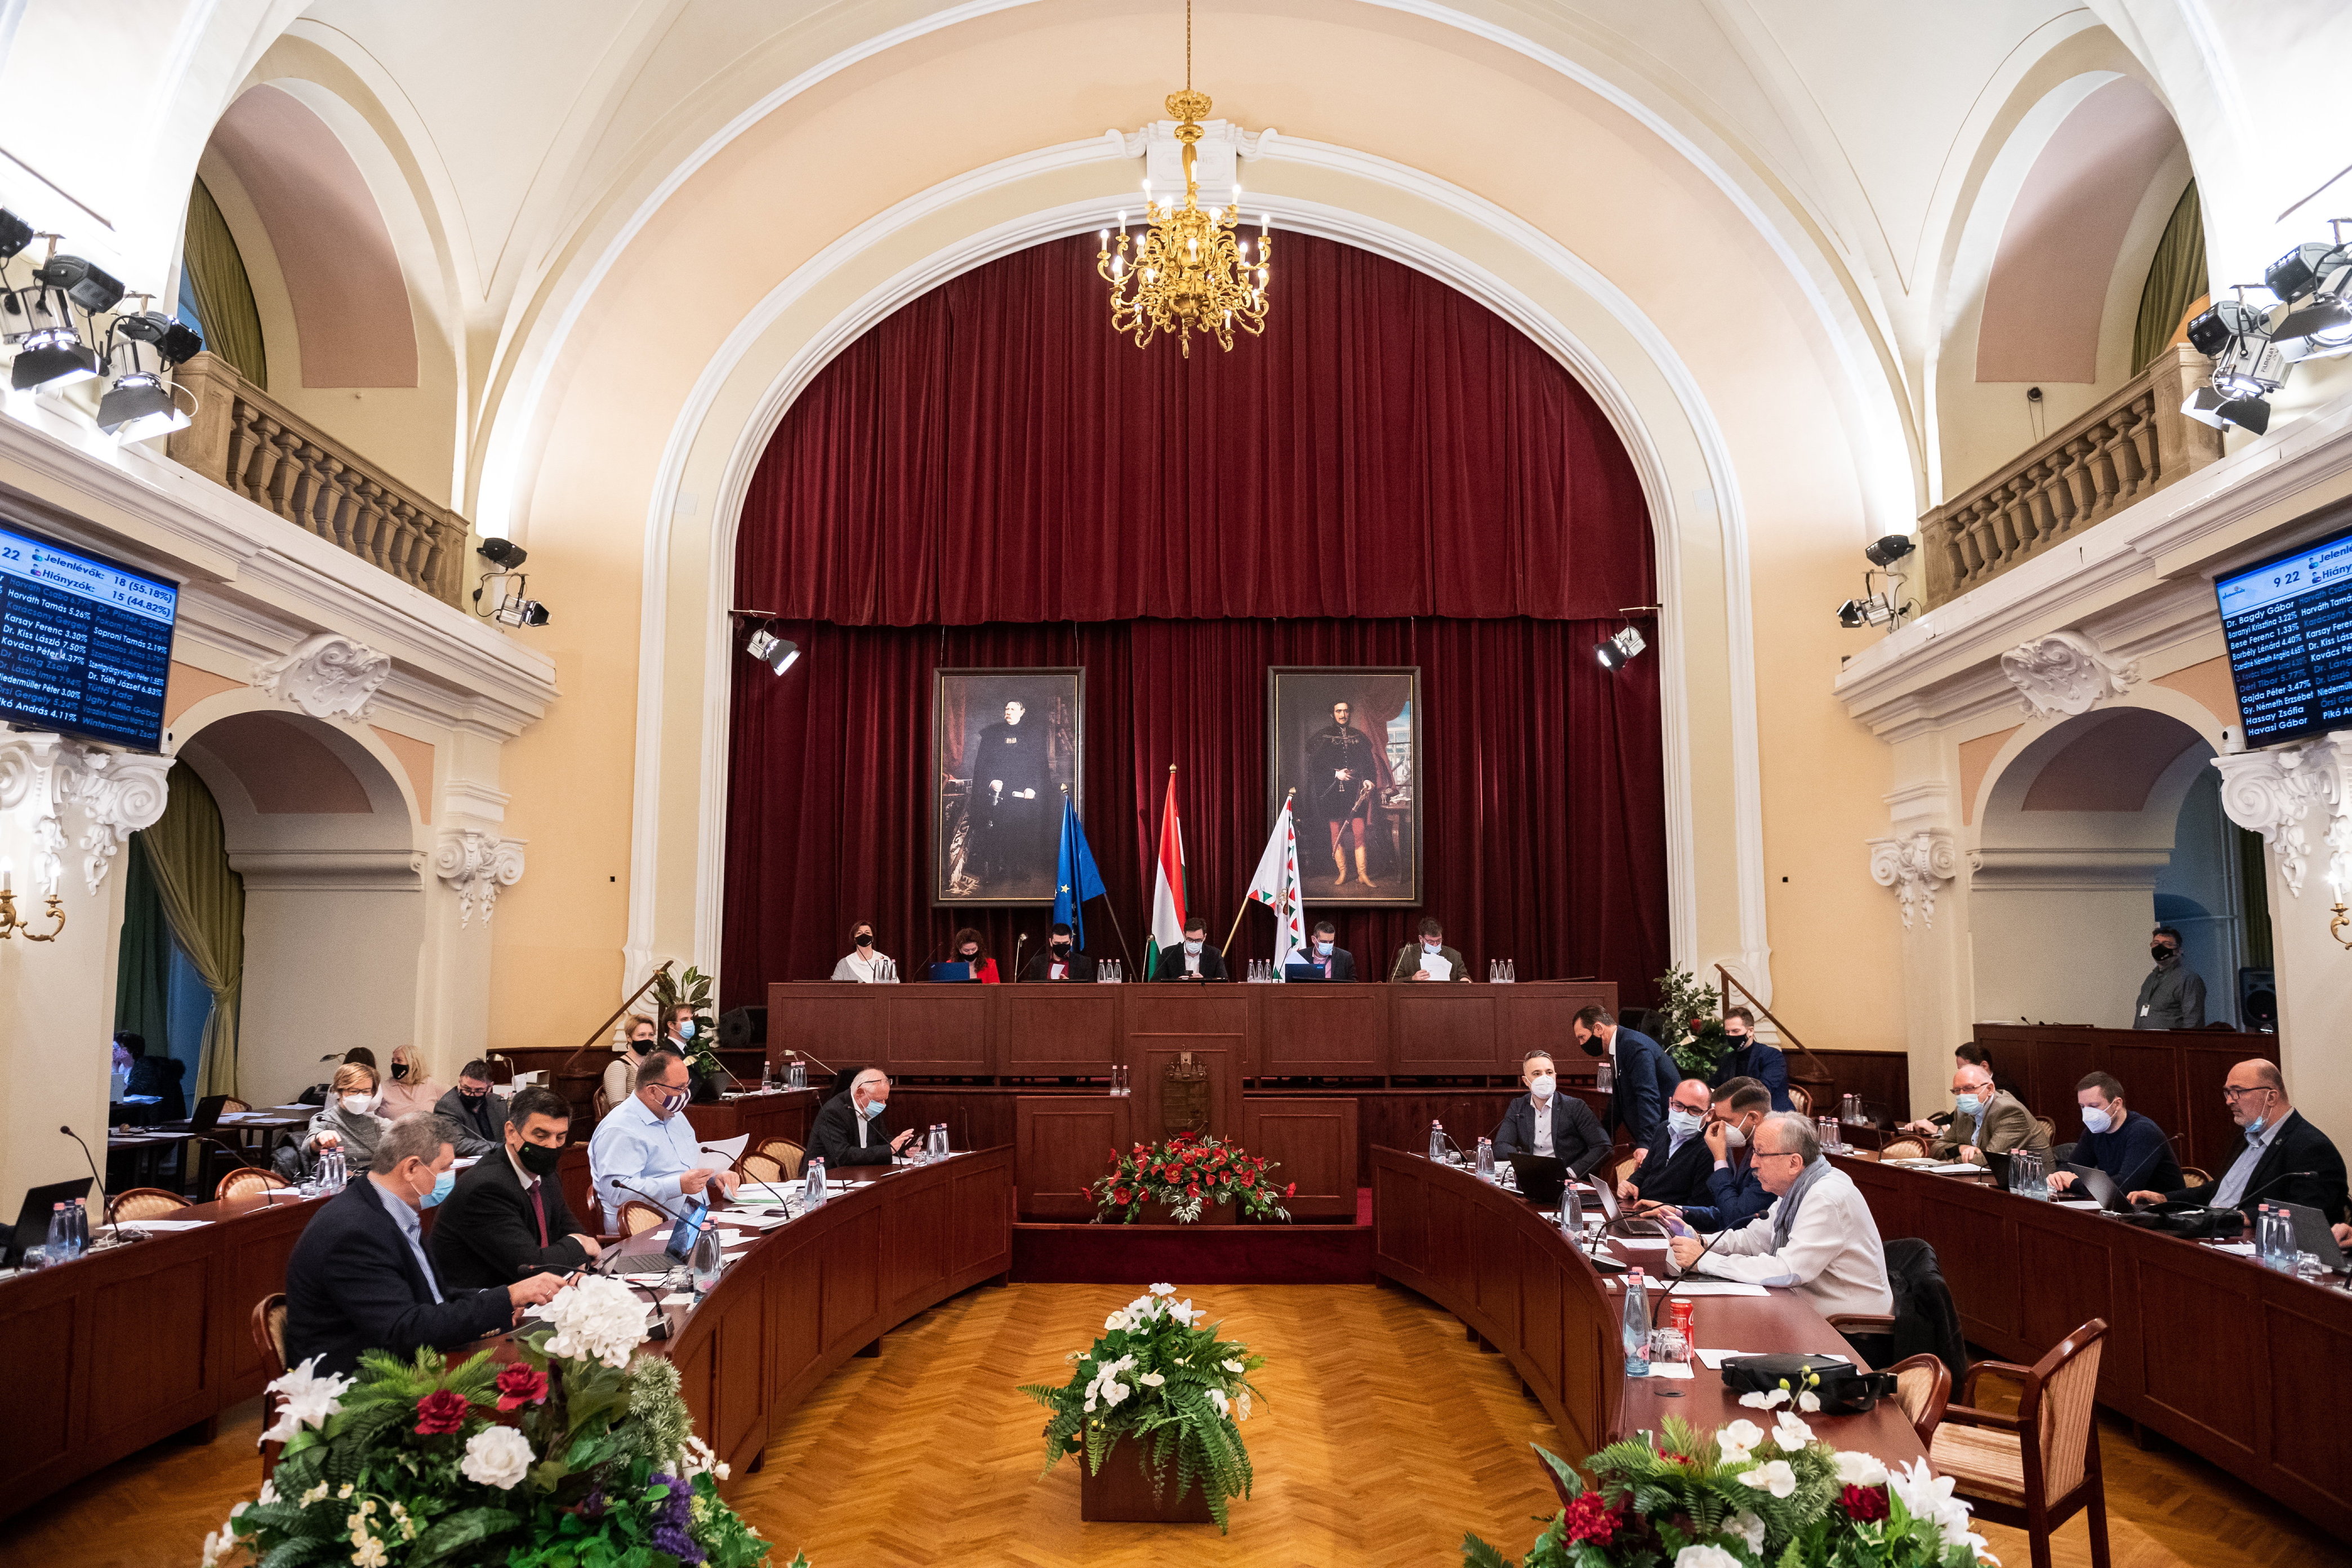 A DK és a Momentum közötti konfliktus miatt marad el a Fővárosi Közgyűlés szerdai ülése